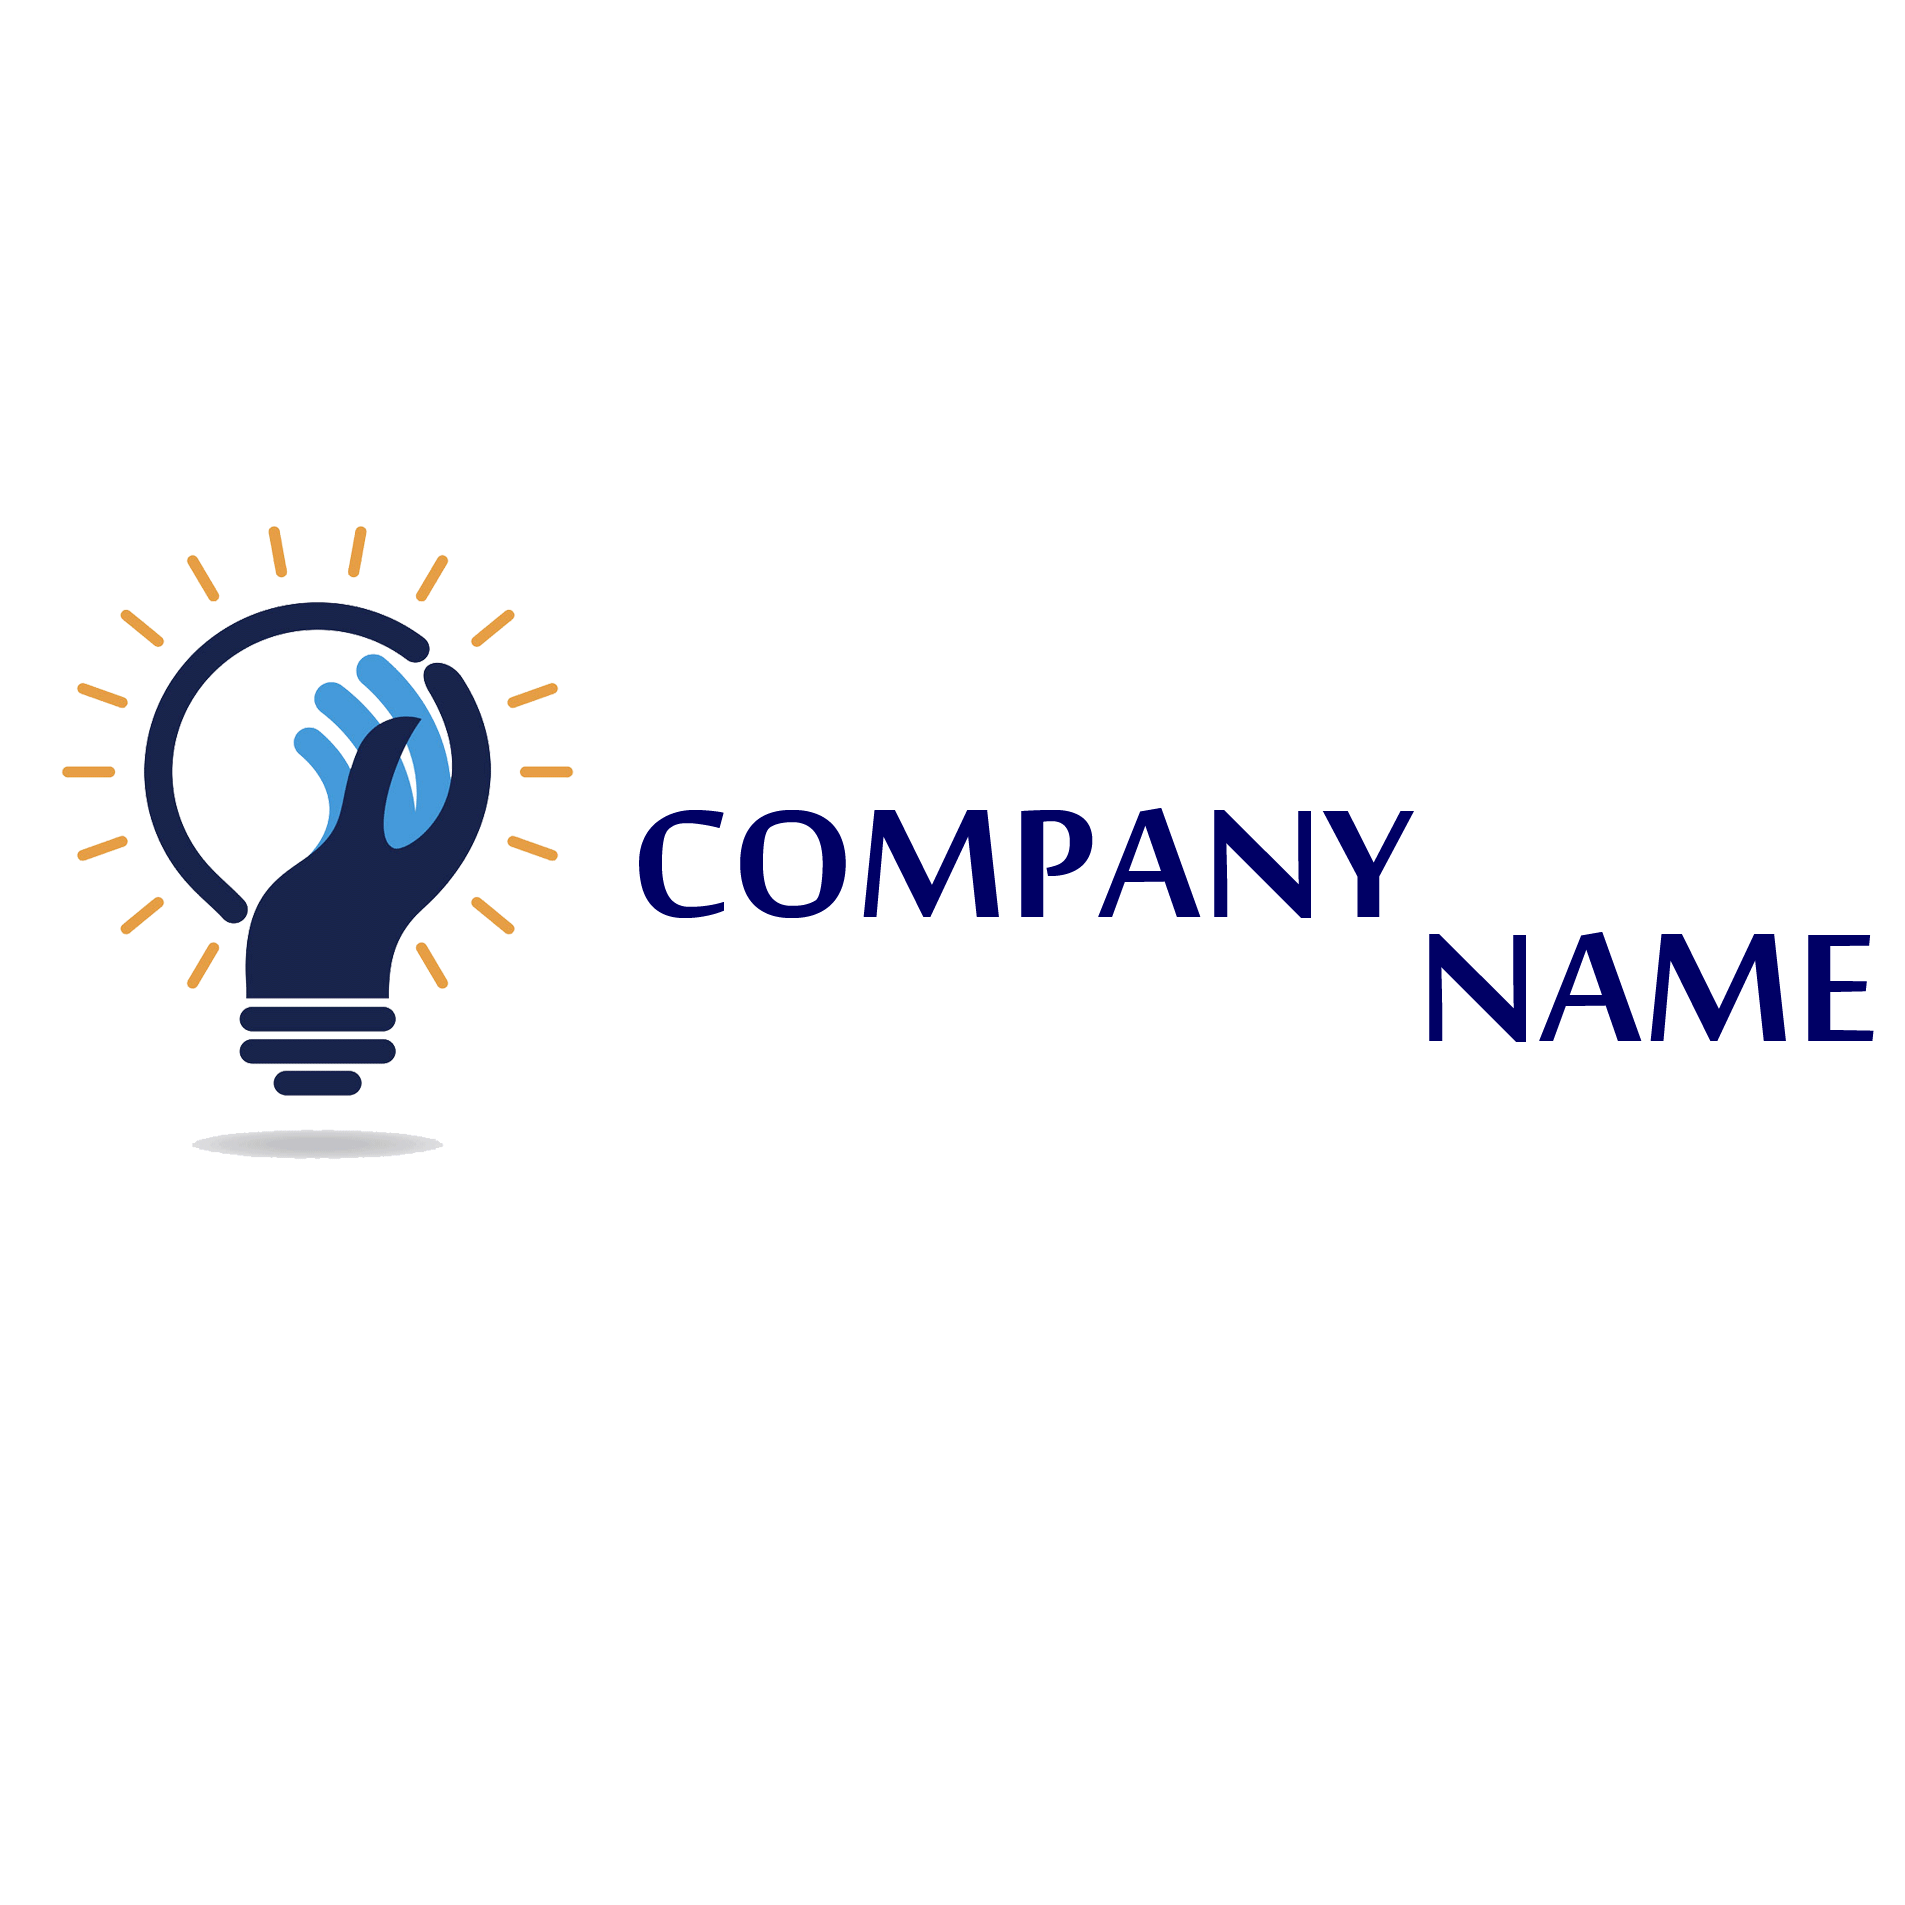 Free Sample Of Company Logo